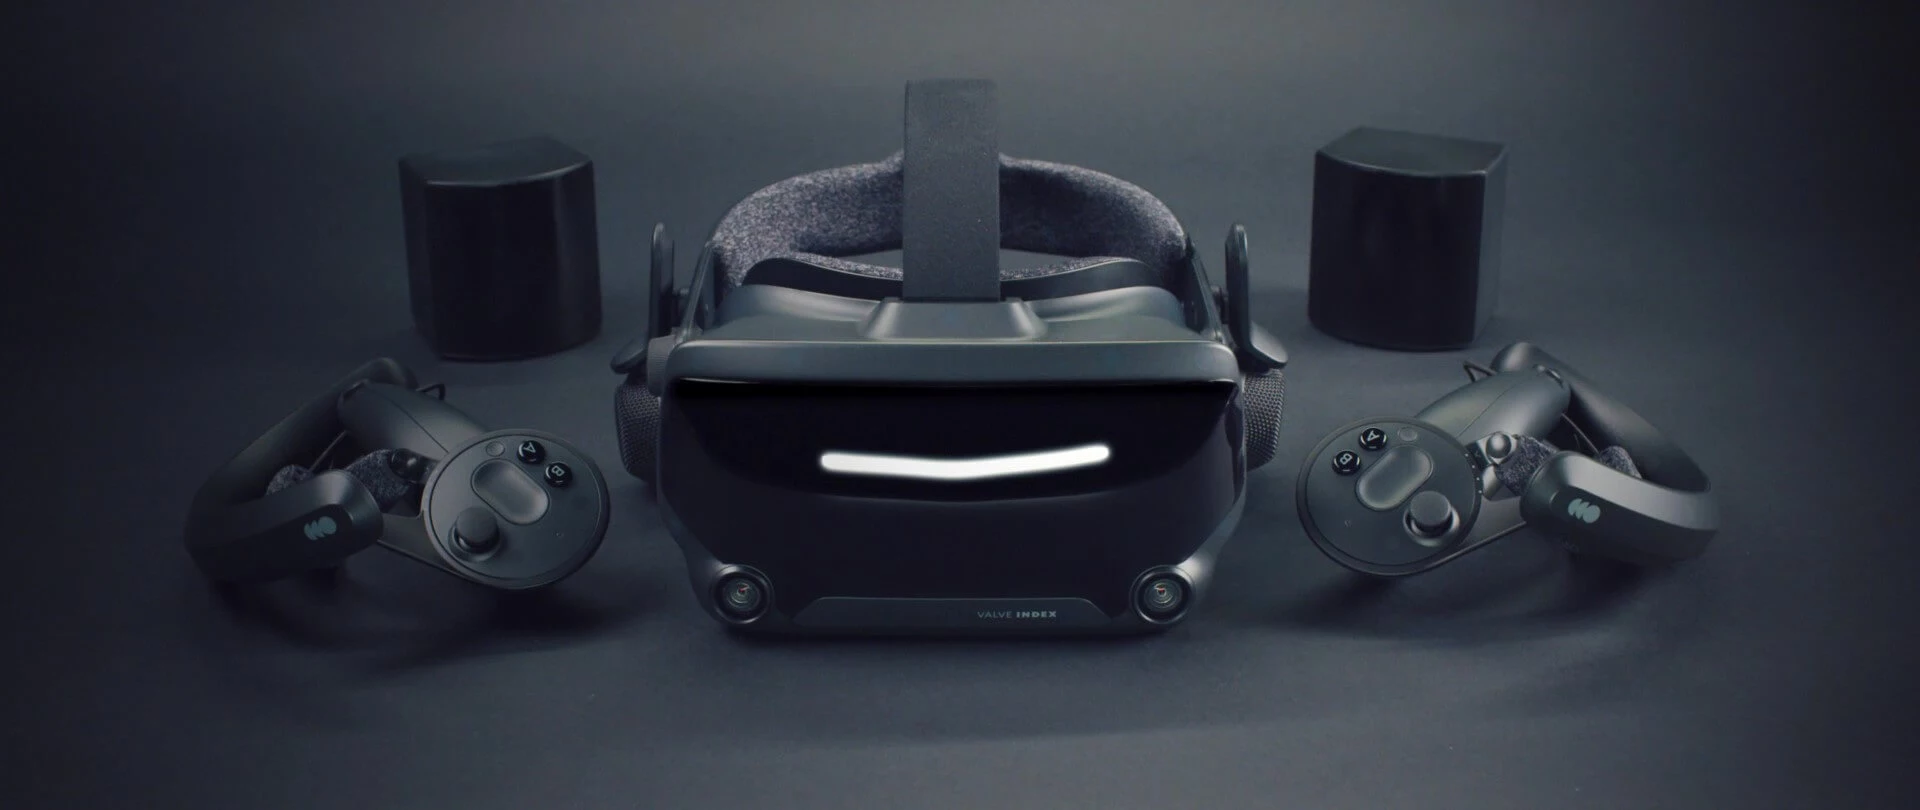 Мне нравится VR, но потенциальная автономная гарнитура Valve Deckard не вызывает у меня никаких эмоций